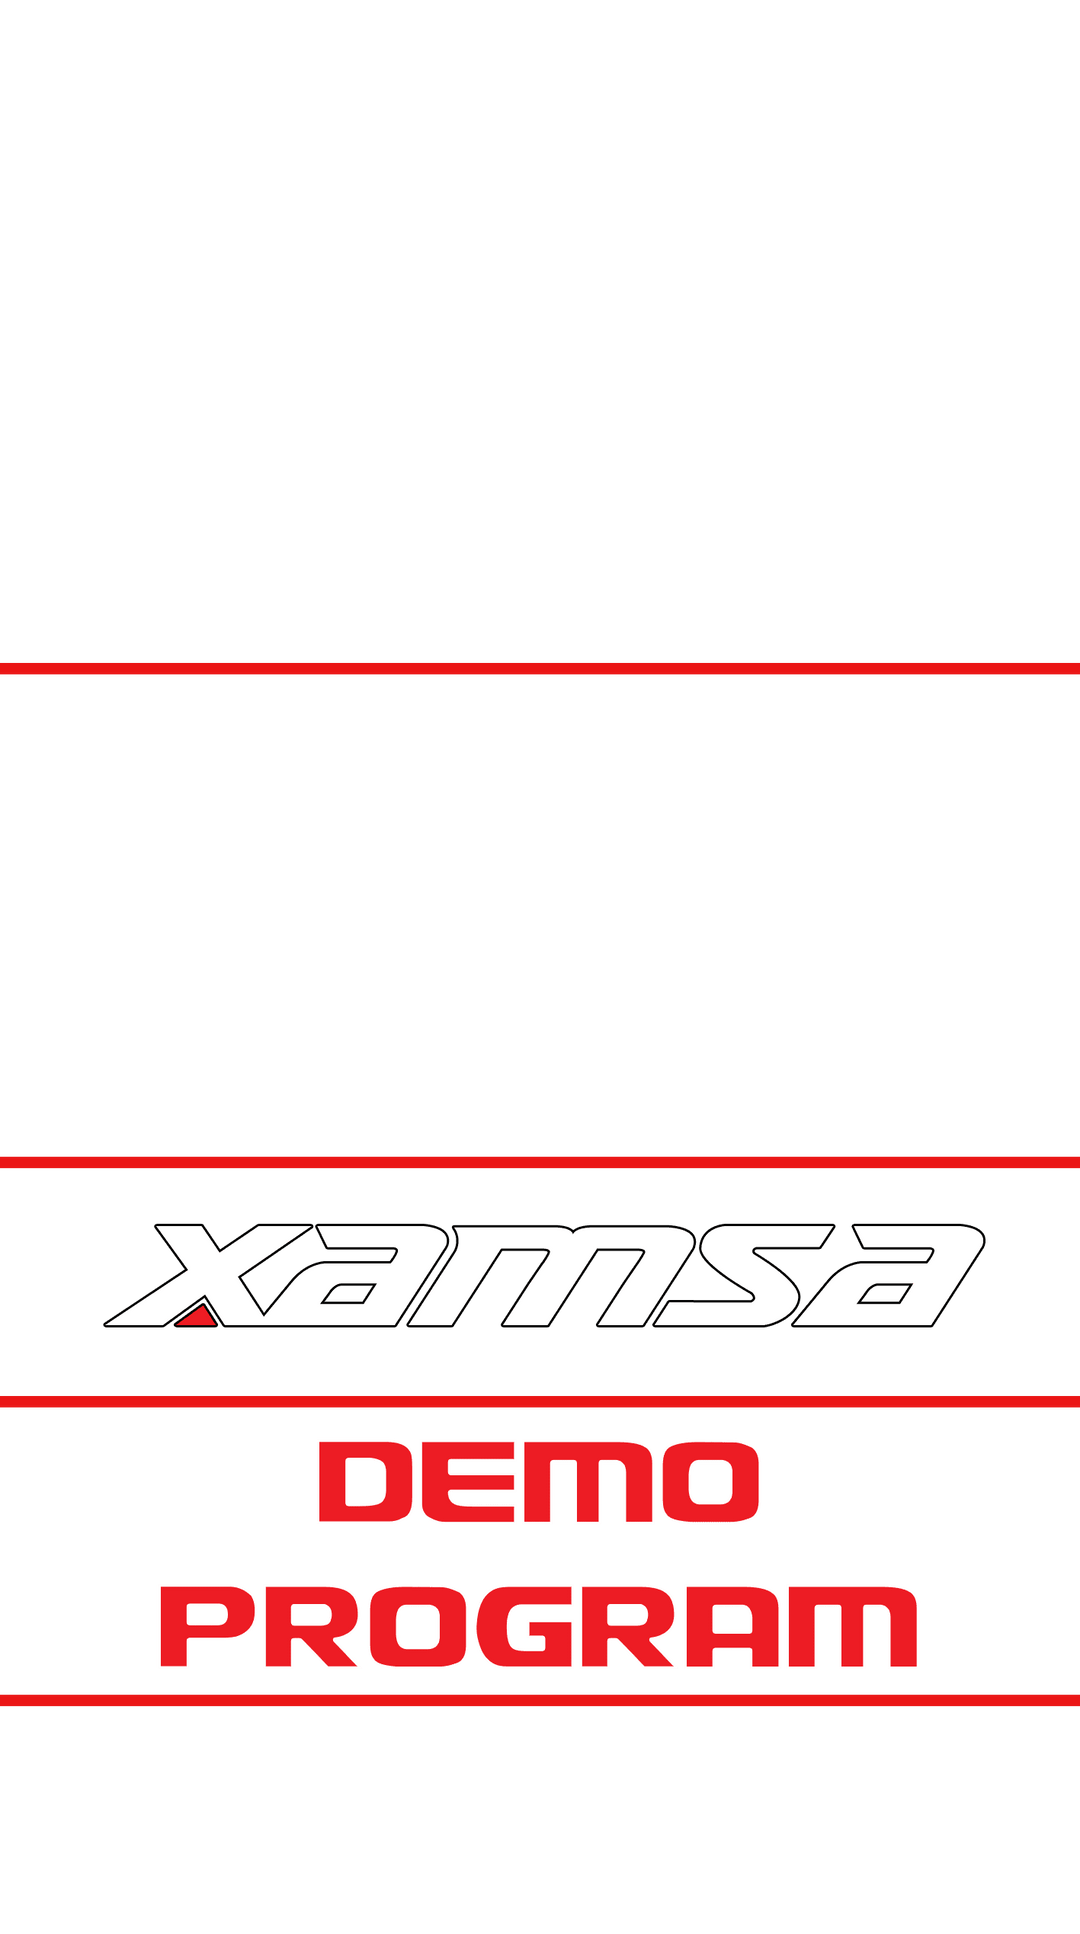 Xamsa Demo Program - XamsaSquash